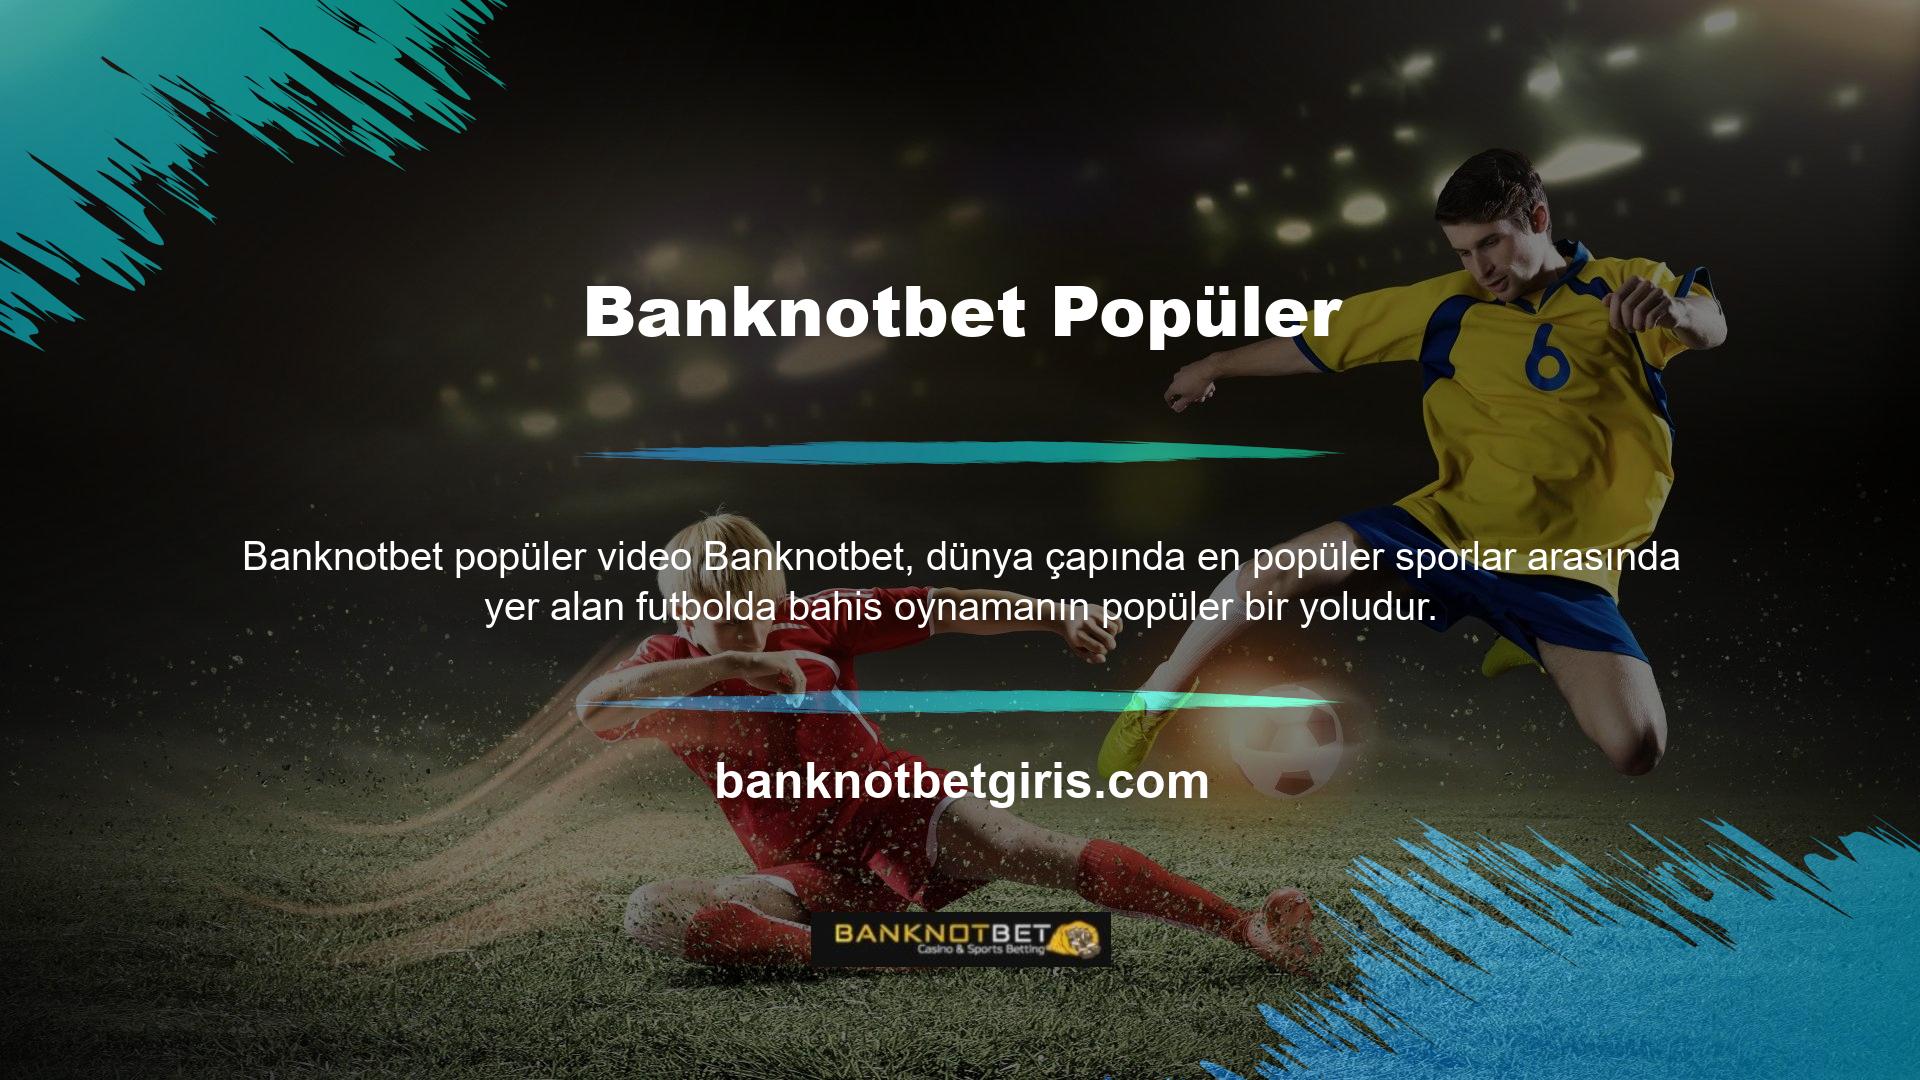 Şampiyonlar Ligi, Dünya Kupası ve UEFA Kupası gibi futbol maçlarına yönelik canlı bahis seçenekleri arasında Banknotbet bahis sitesi bulunmaktadır